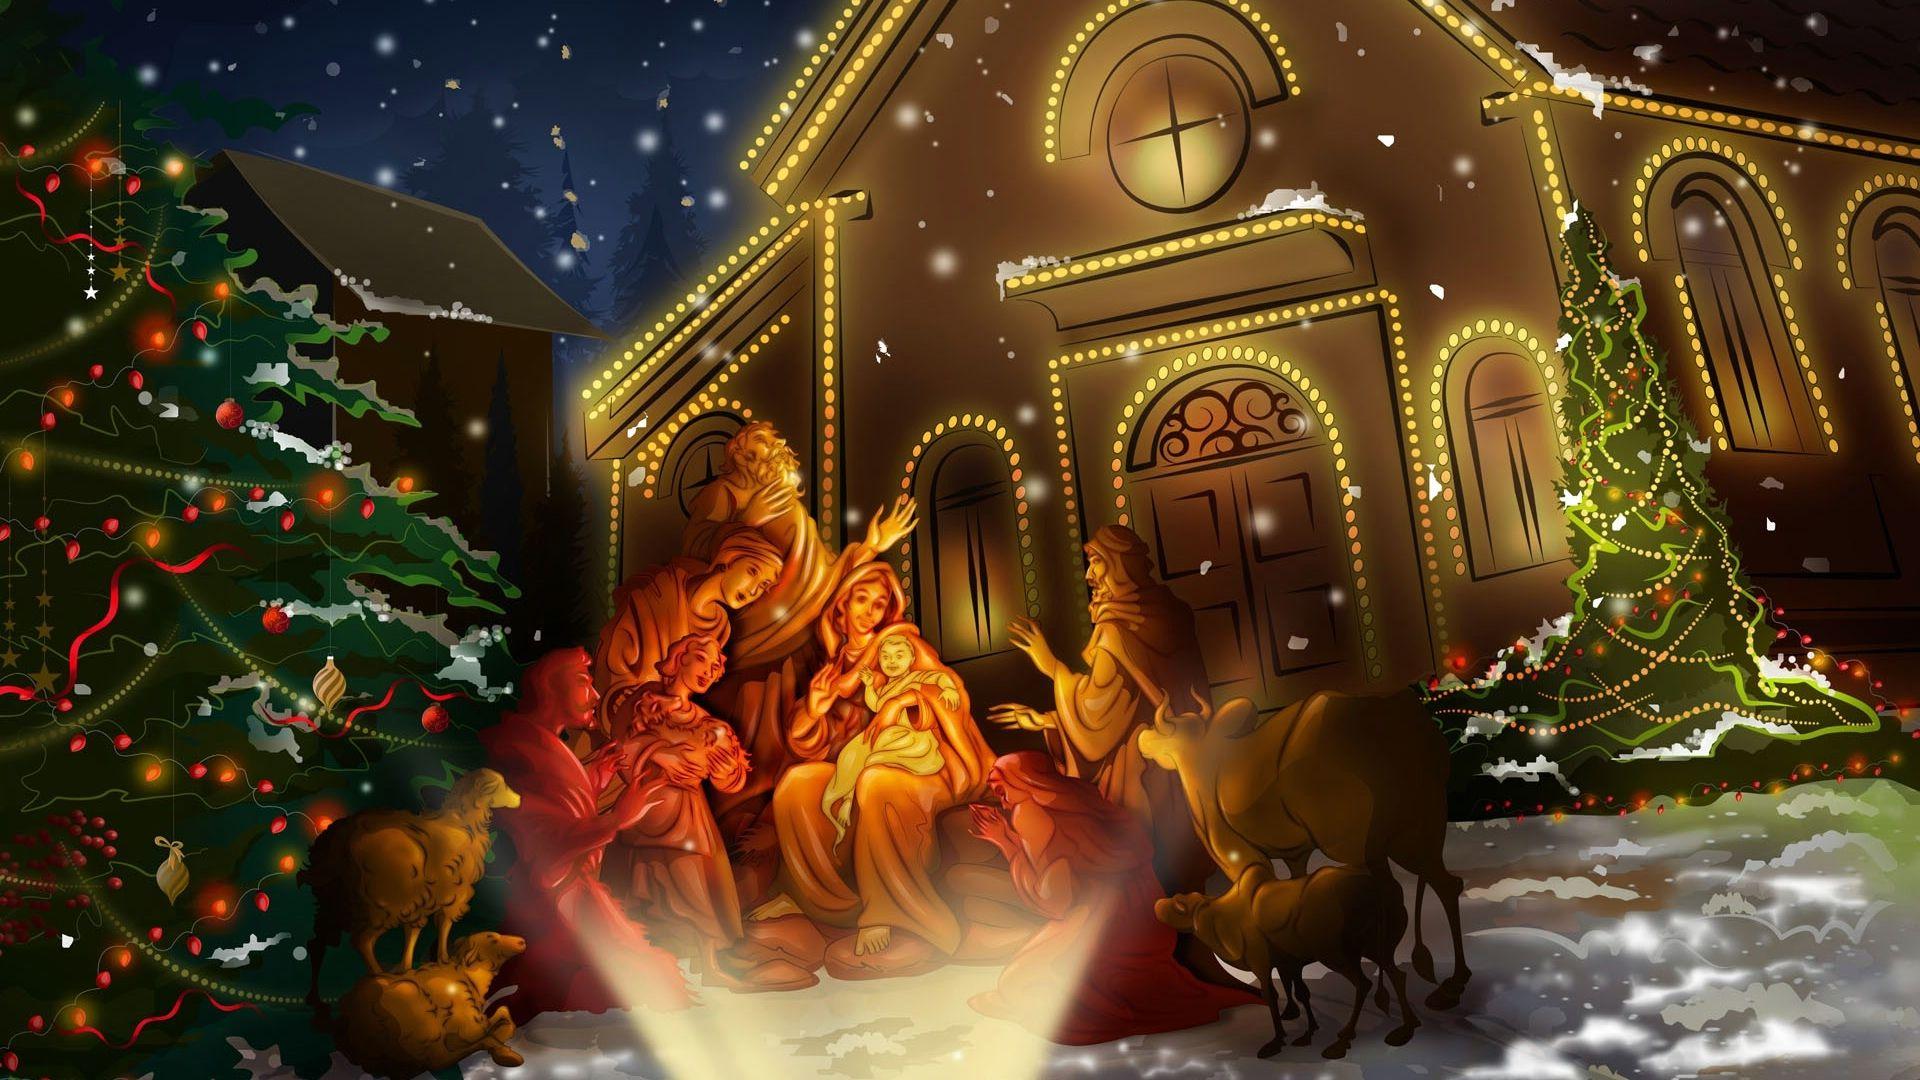 Animated Christmas Desktop Wallpaper. Animated Christmas